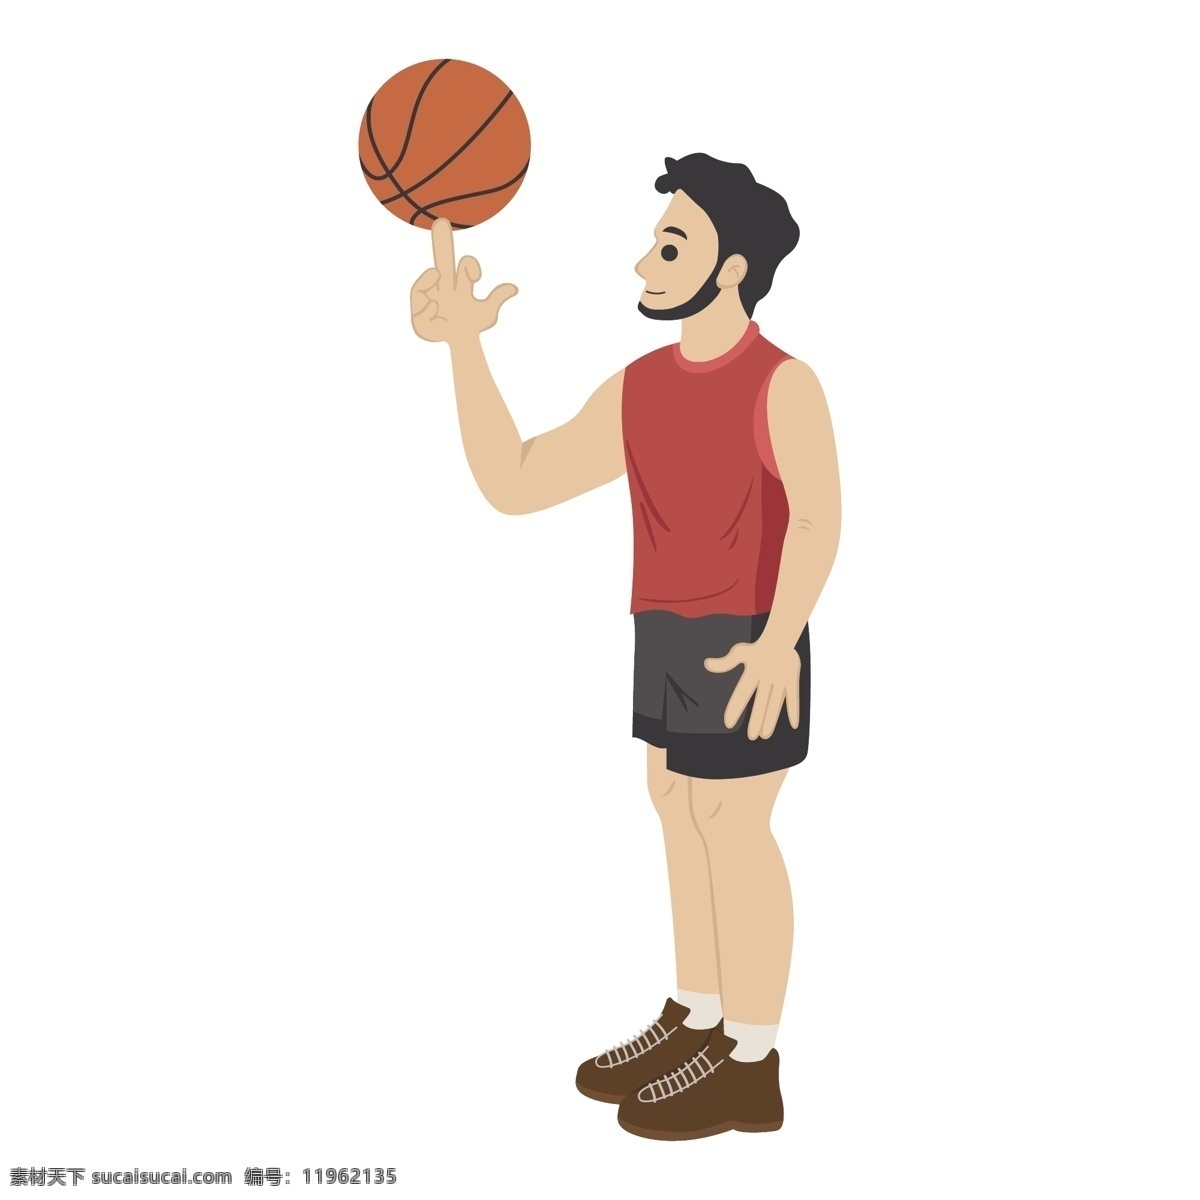 卡通 旋转 篮球 矢量 打篮球 篮球运动员 运动员 卡通篮球 打篮球的男人 卡通男人 可爱男人